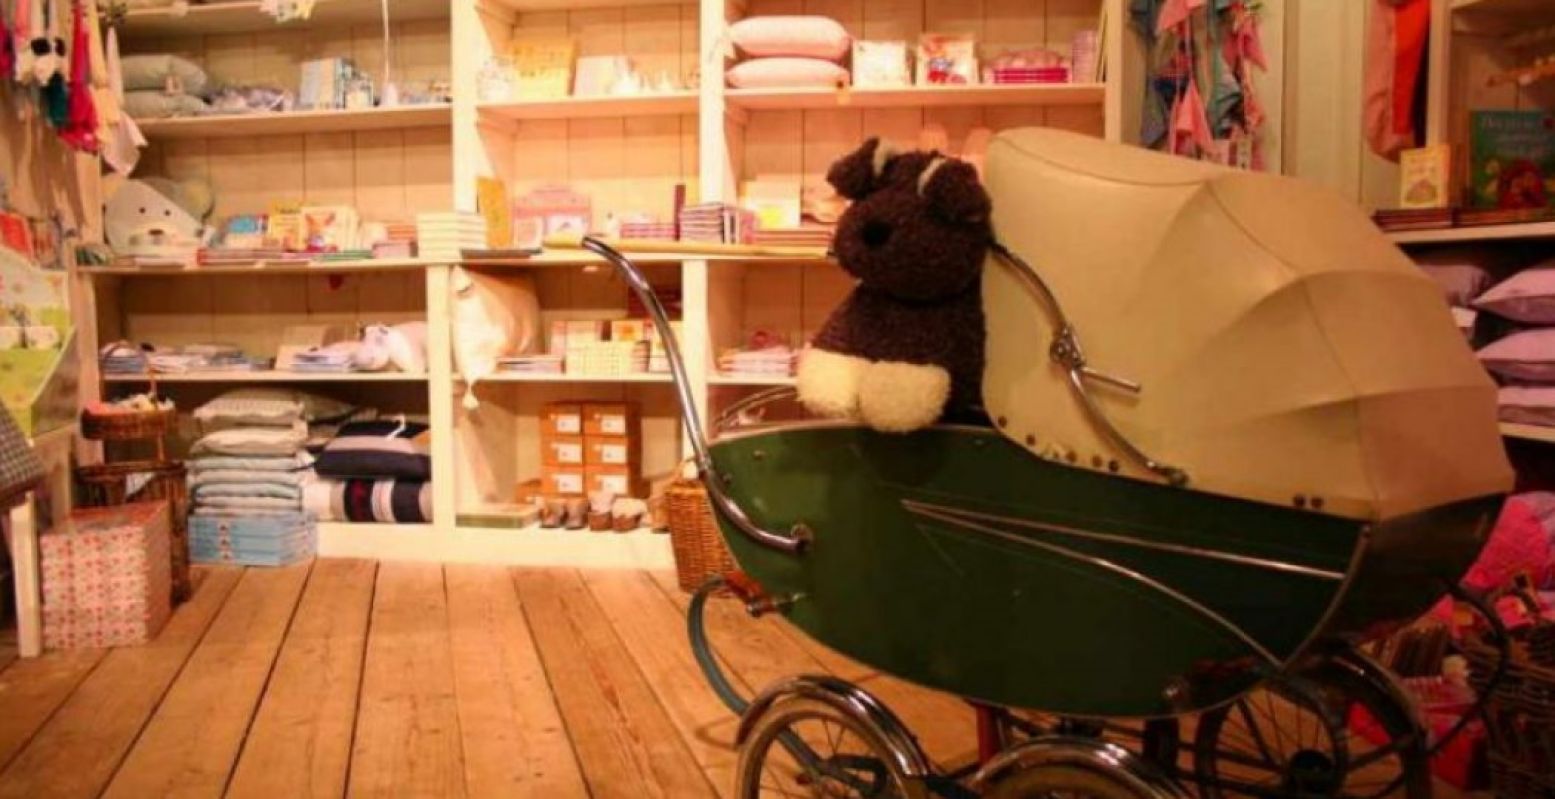 Bij De Binnenkamer koop je ook de leukste spullen voor in de kinderkamer. Foto: Annette van den Berg.